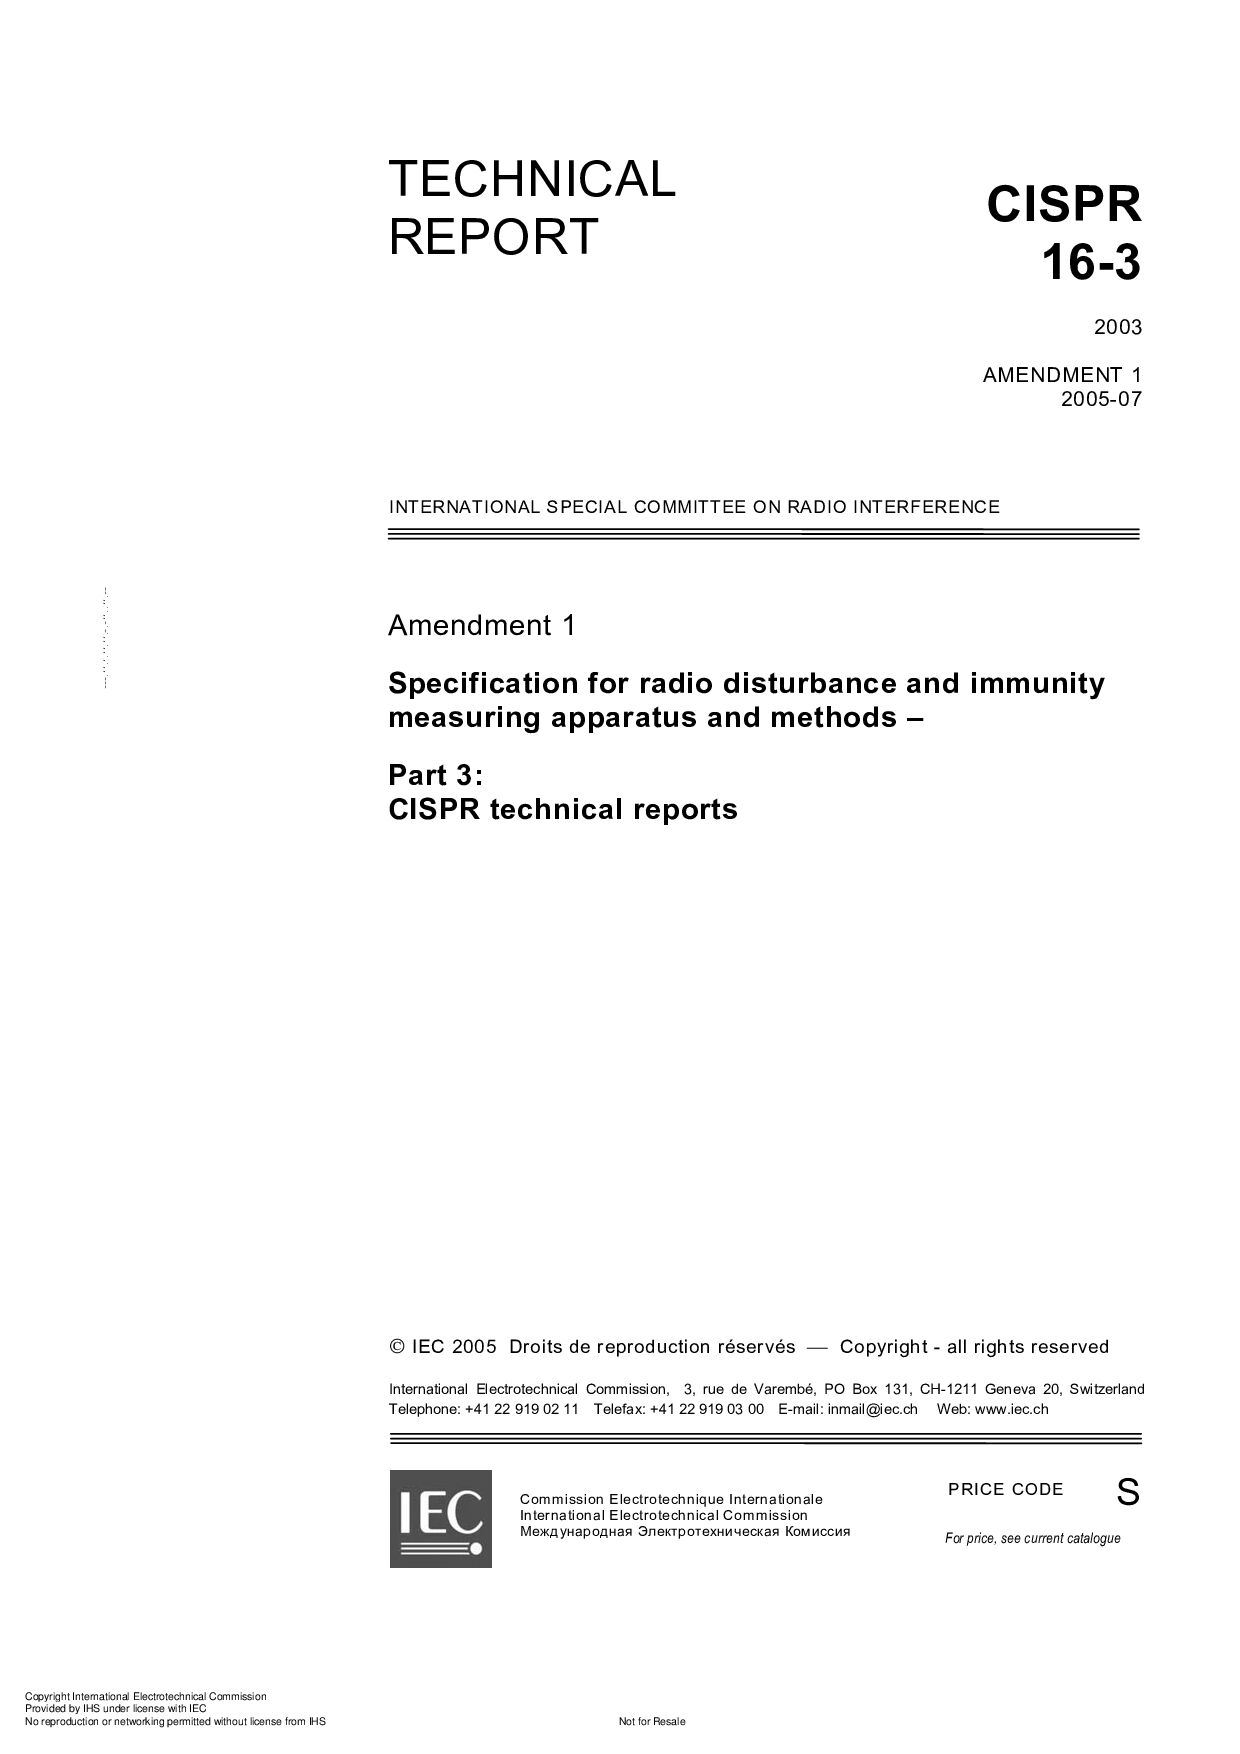 CISPR 16-3-2003封面图